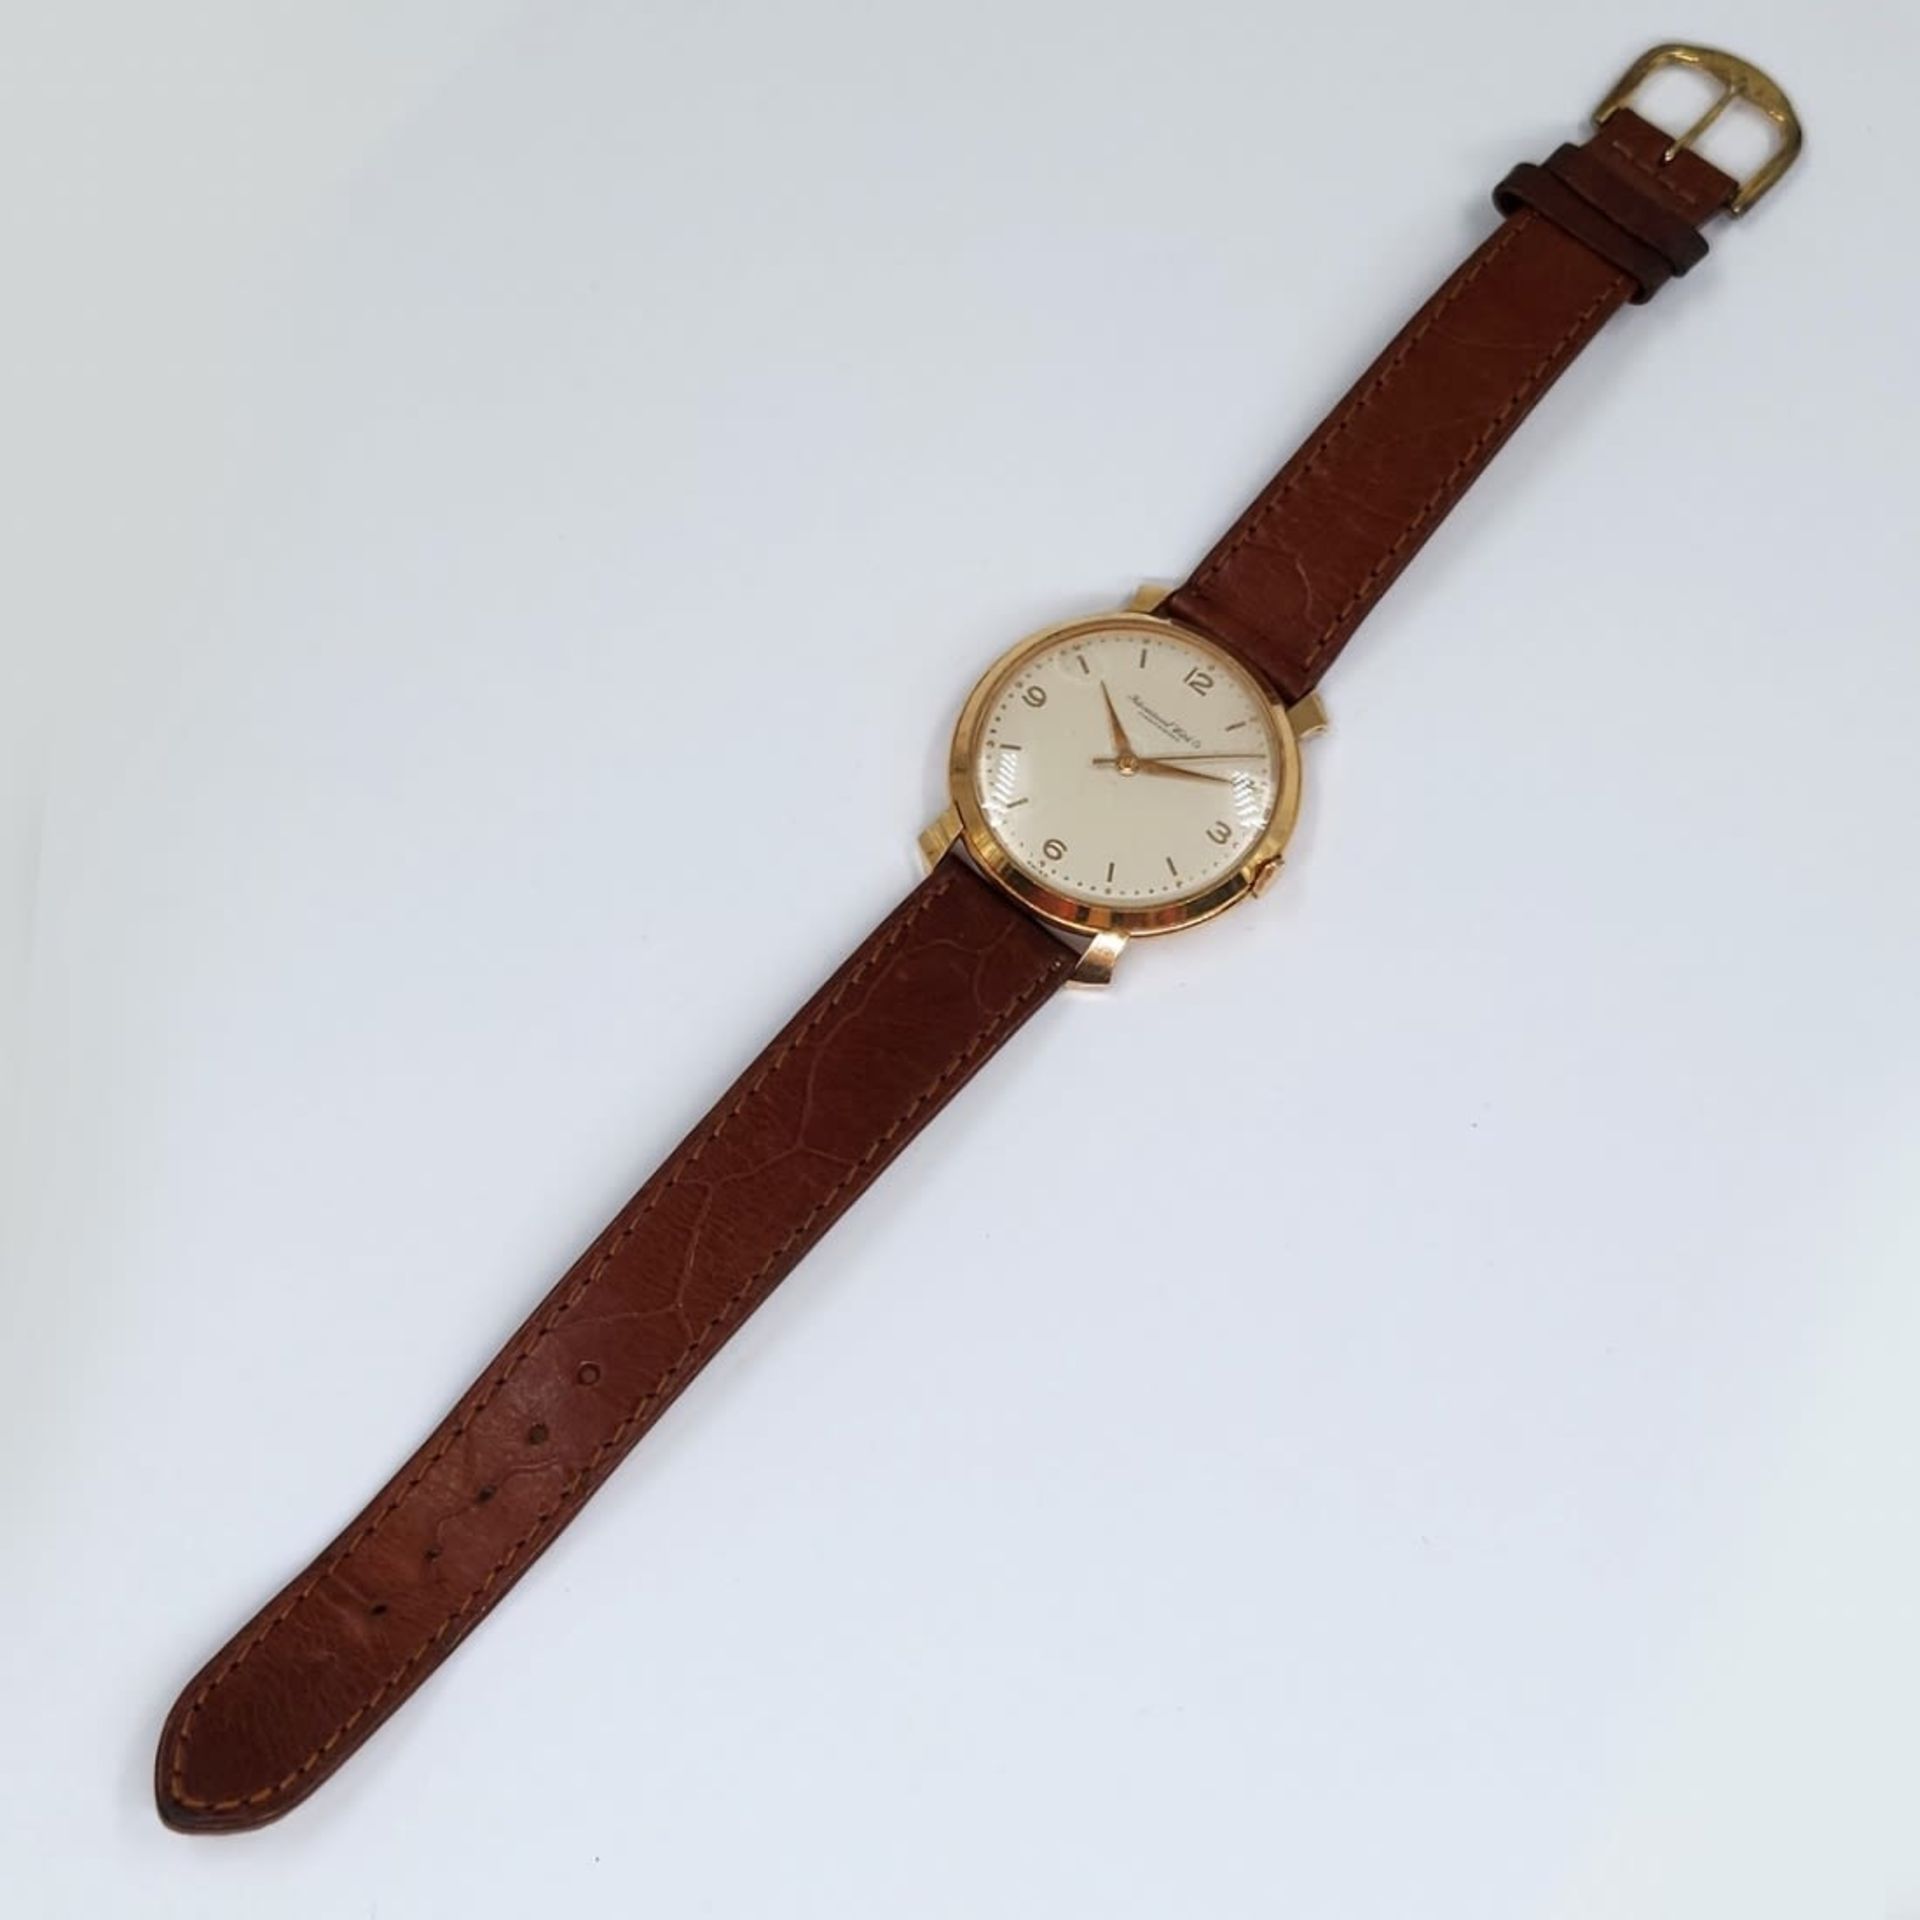 Wristwatch for men made by: 'Schaffhausen', 14k yellow gold, brown leather strap, working - Bild 3 aus 4